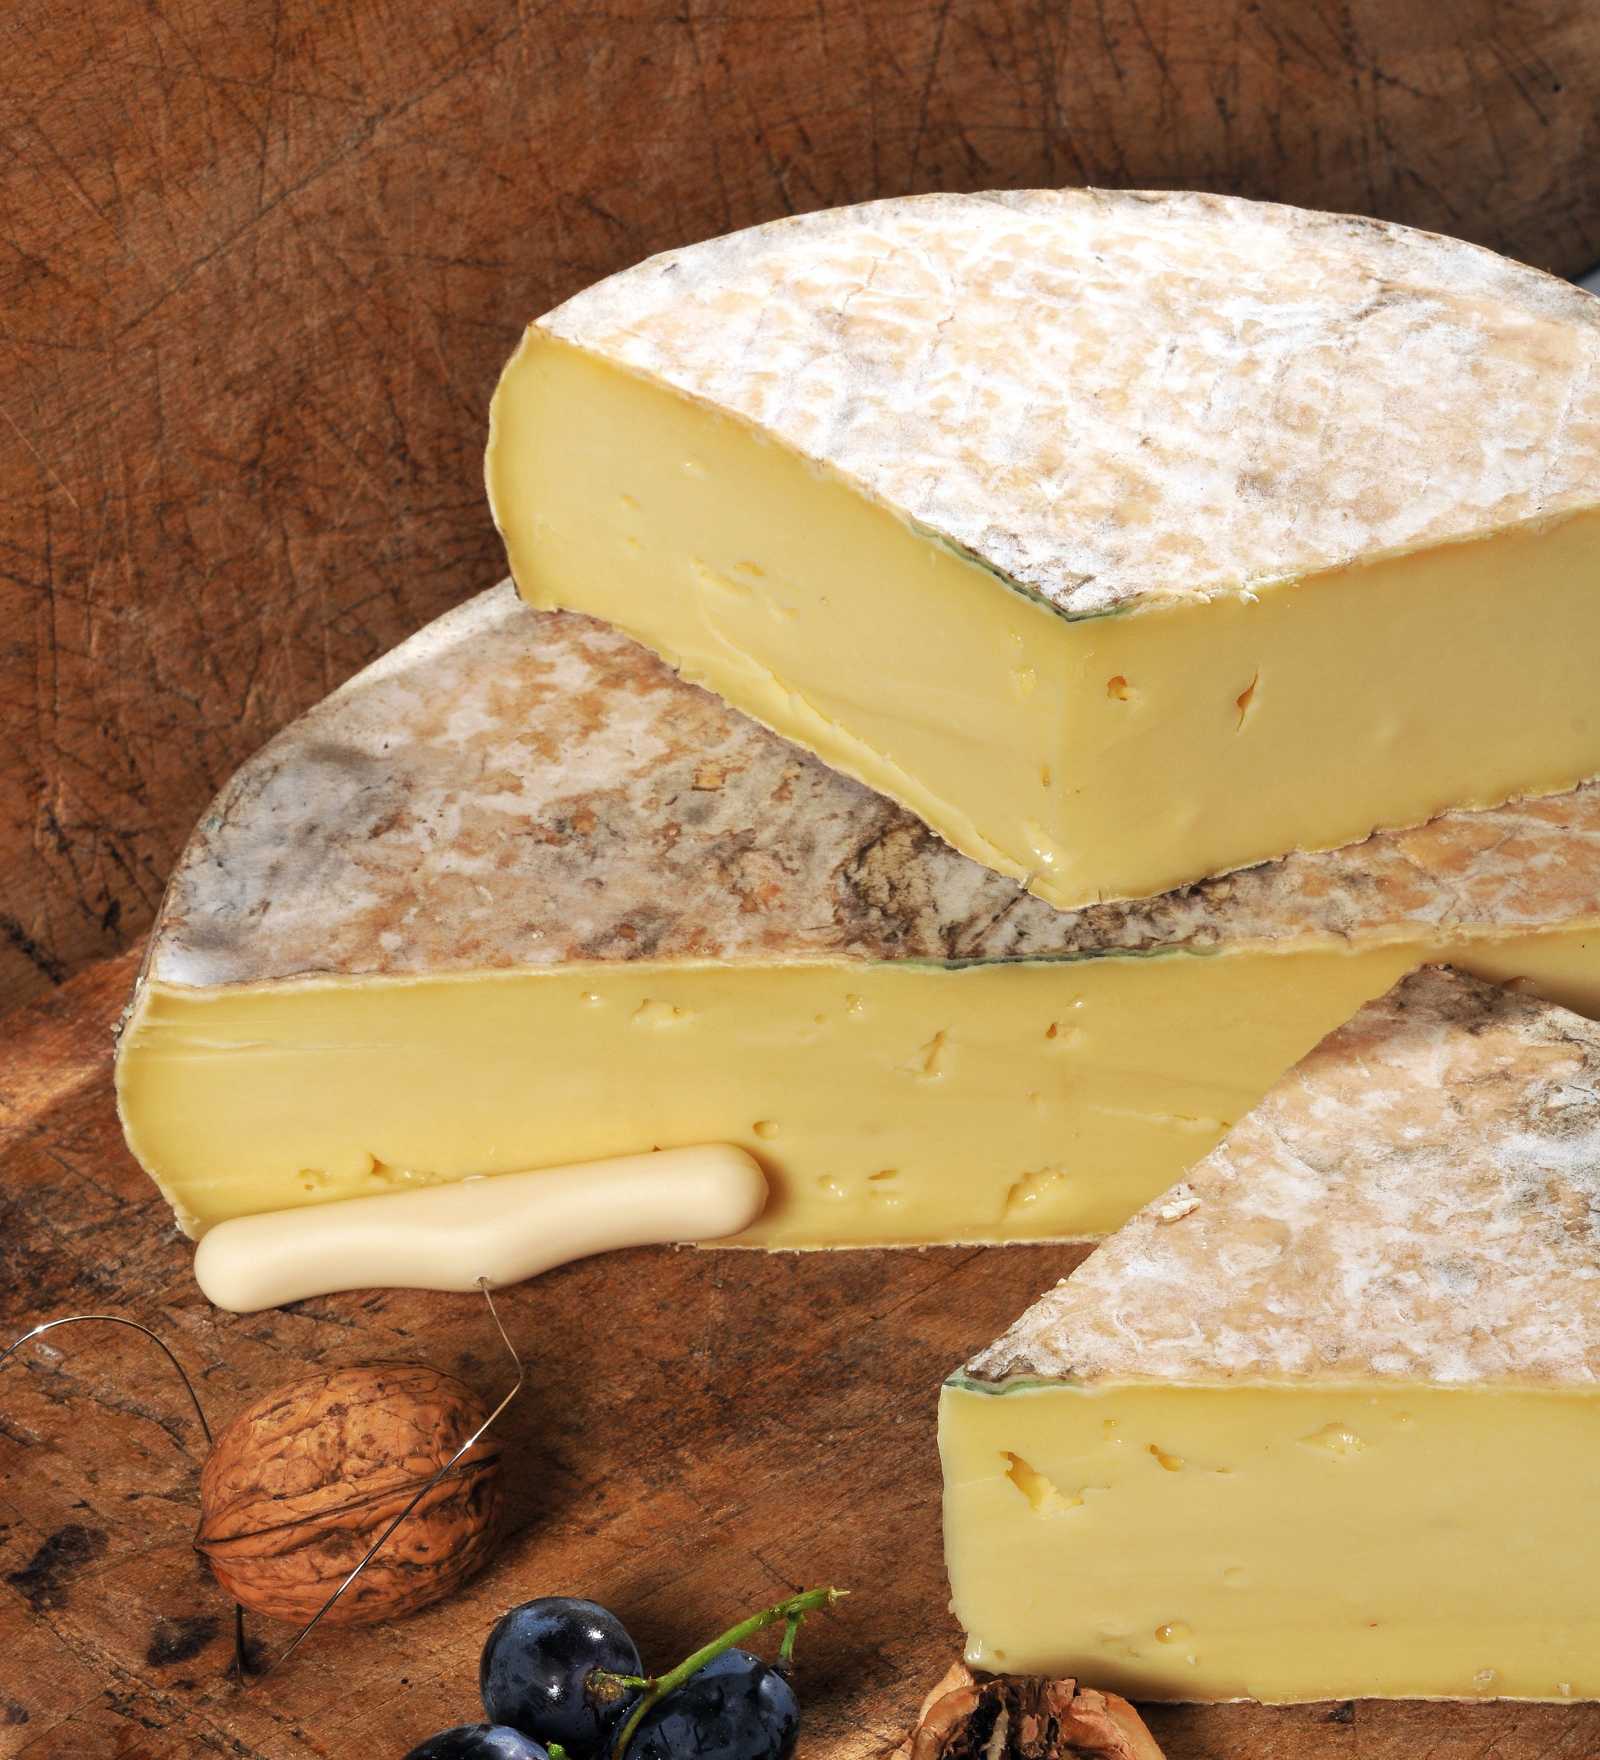 Les fromages d'Auvergne